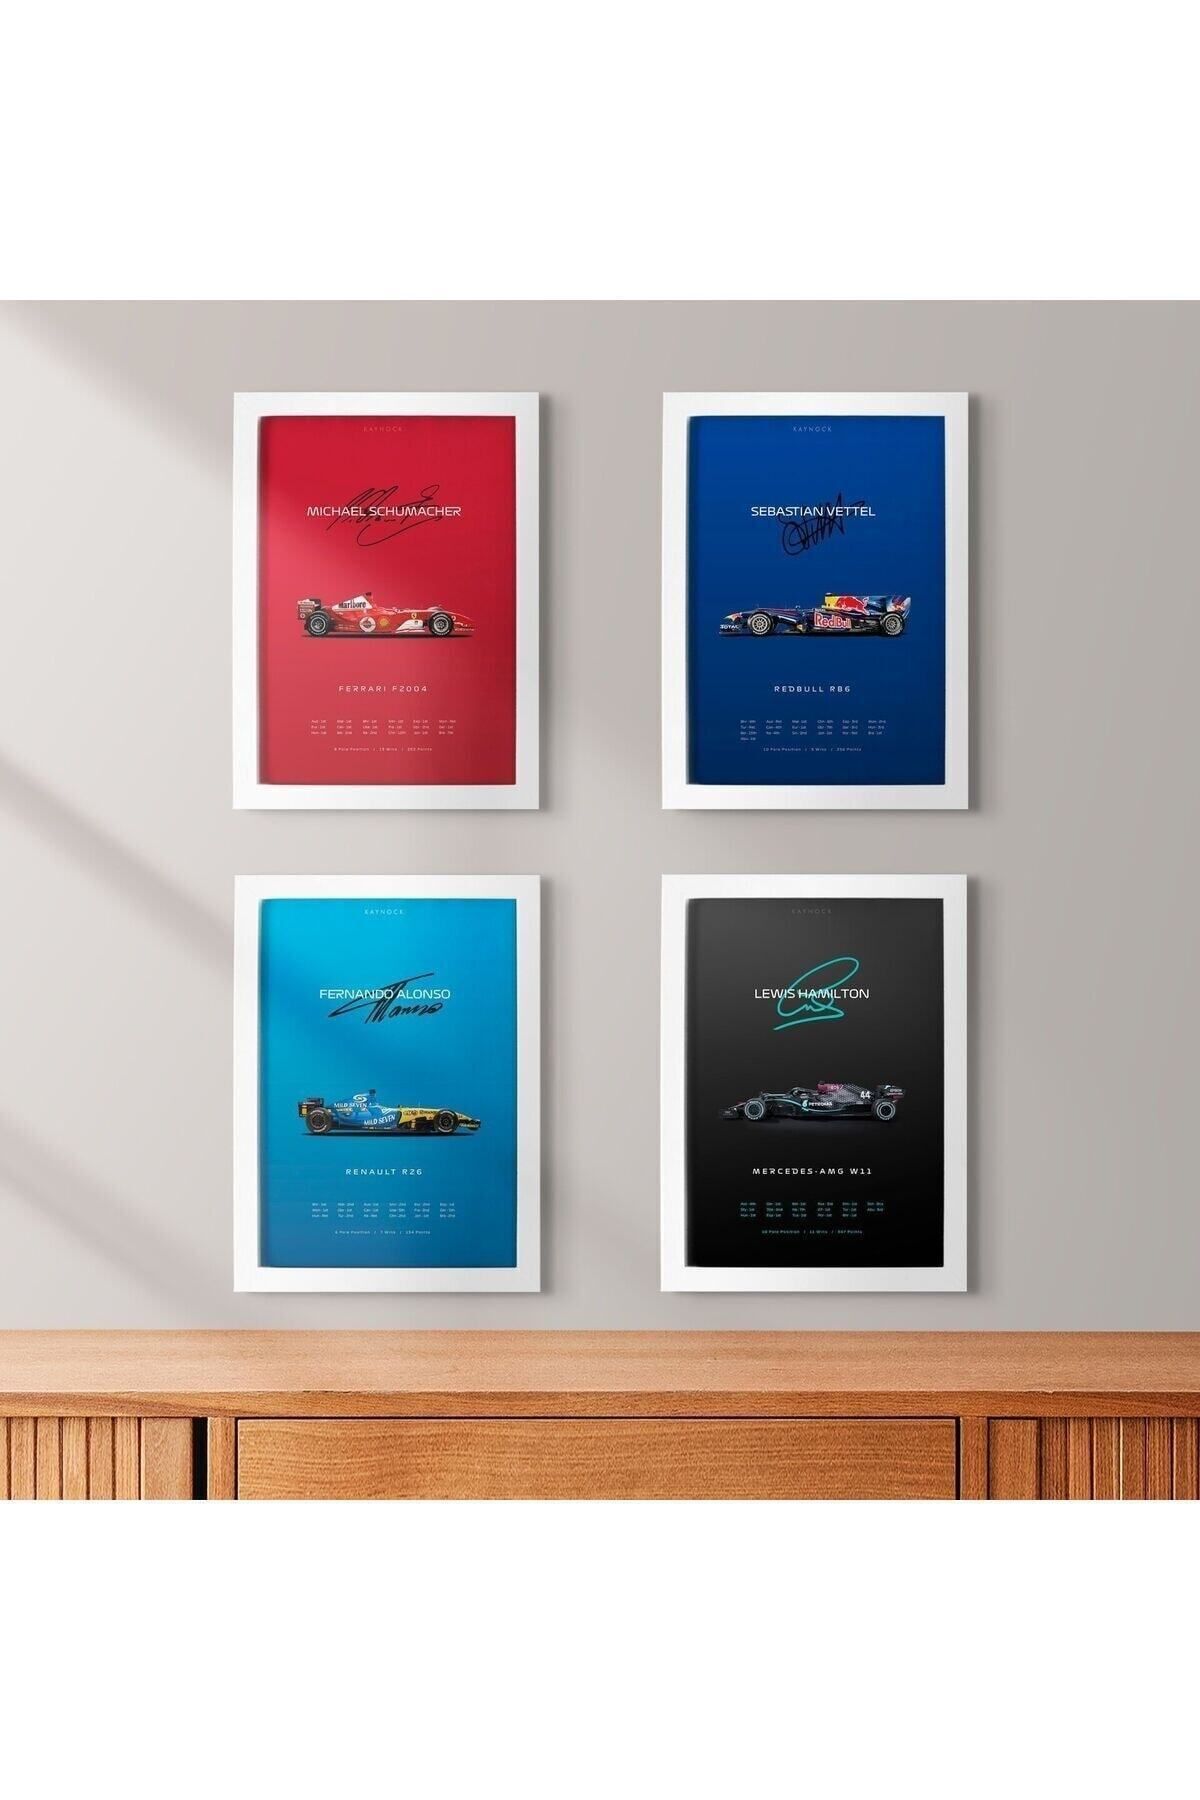 KAYNOCK F1 Efsaneleri 4'lü Set, Formula 1, F1, Schumacher, Hamilton, Poster Tablo Dijital Tasarım